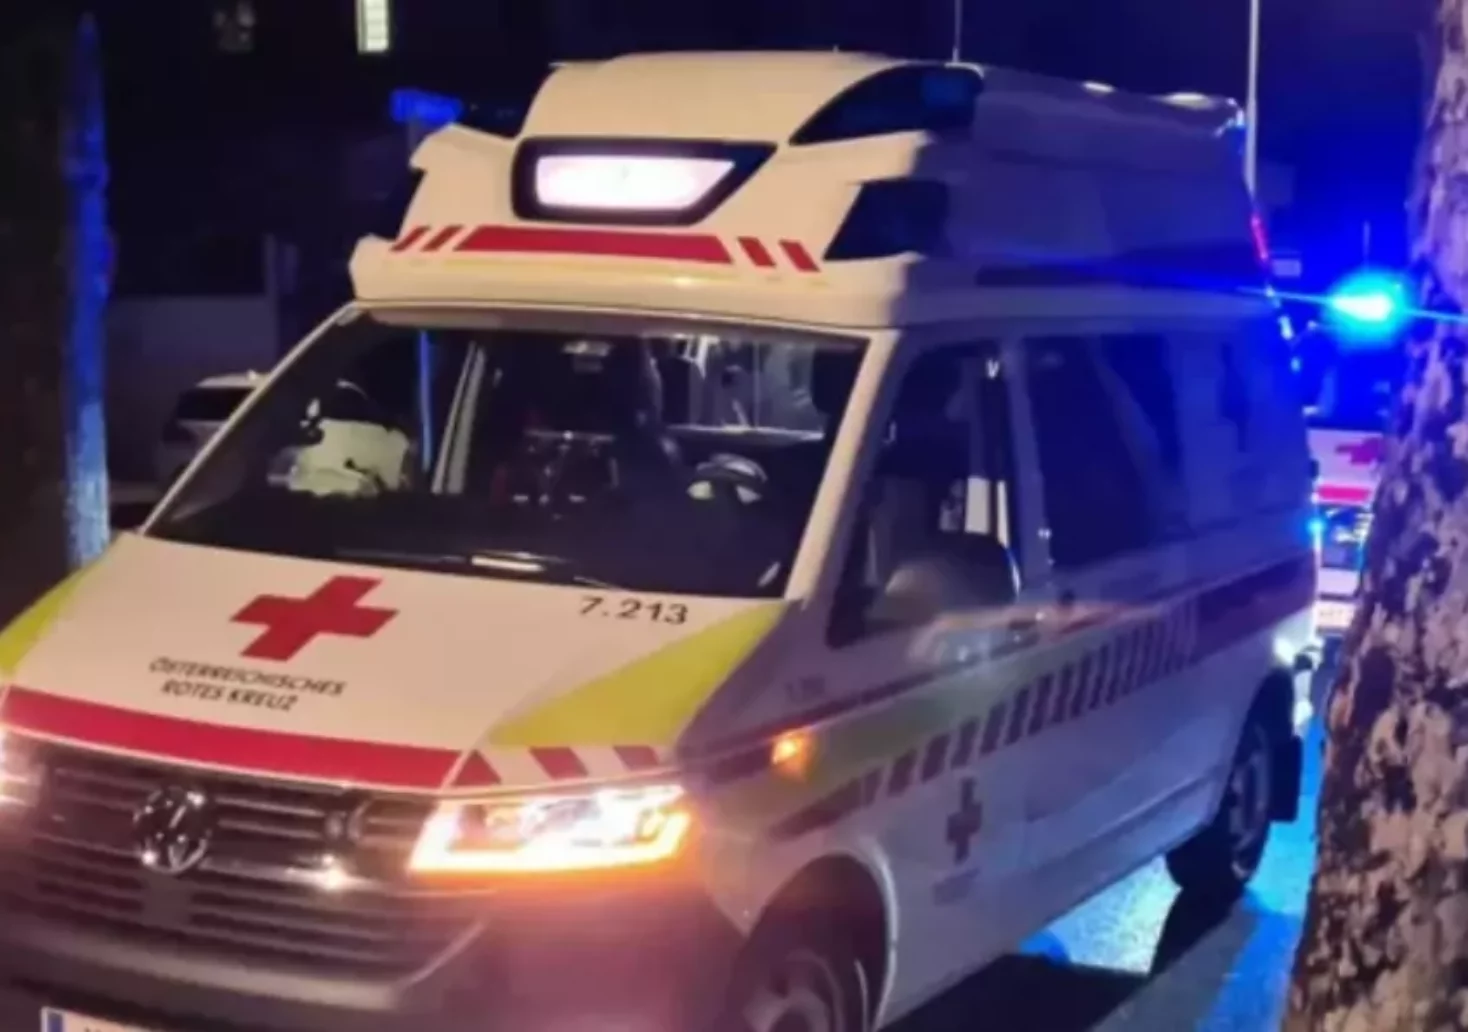 Foto in Beitrag von 5min.at: Zu sehen ist ein Rettungsauto in der Nacht in Klagenfurt..